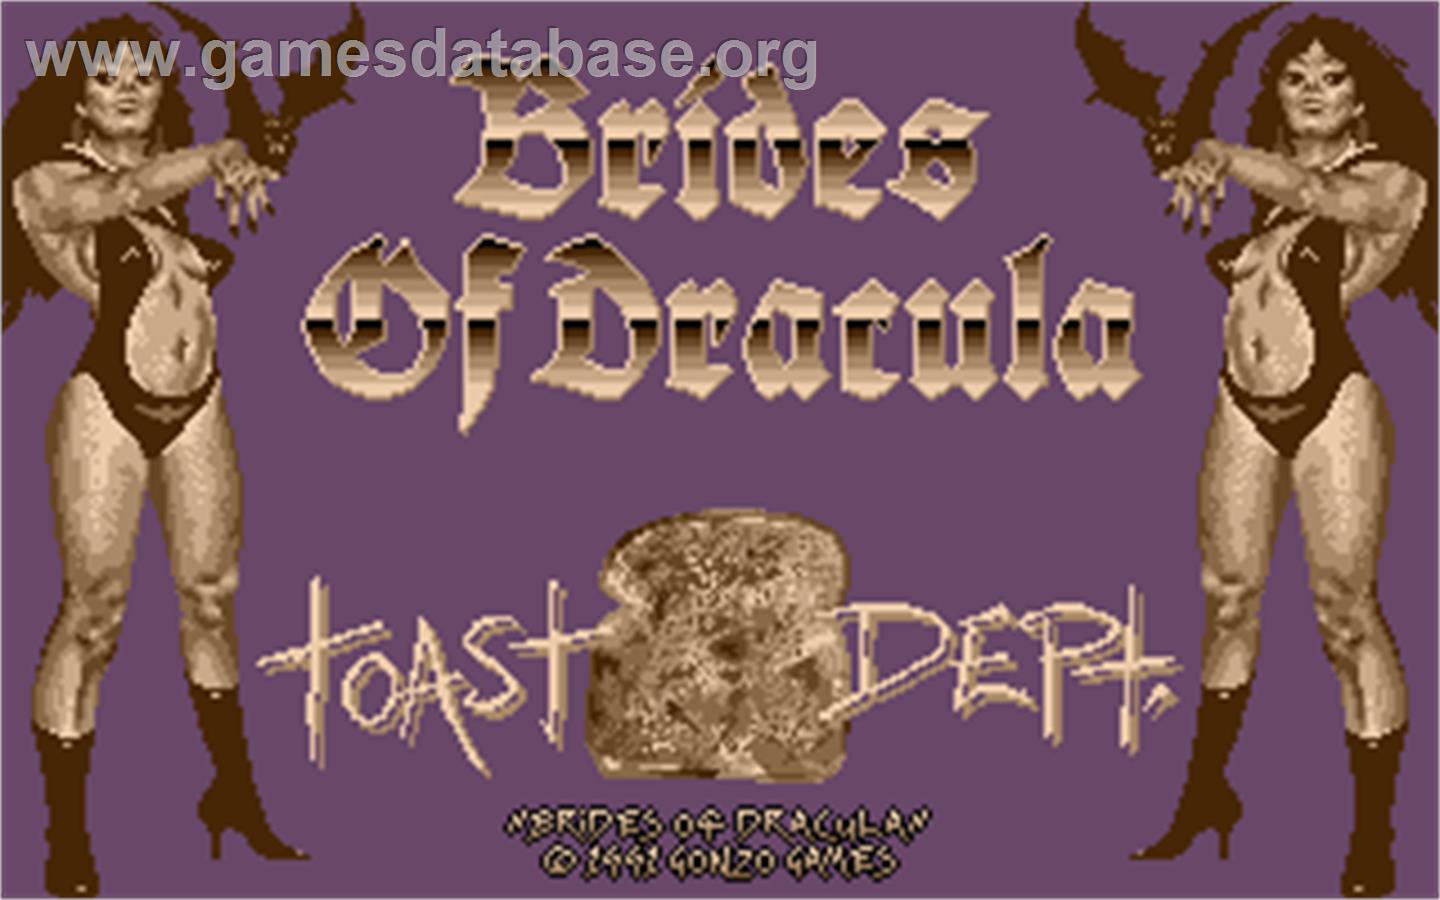 Brides of Dracula - Atari ST - Artwork - Title Screen